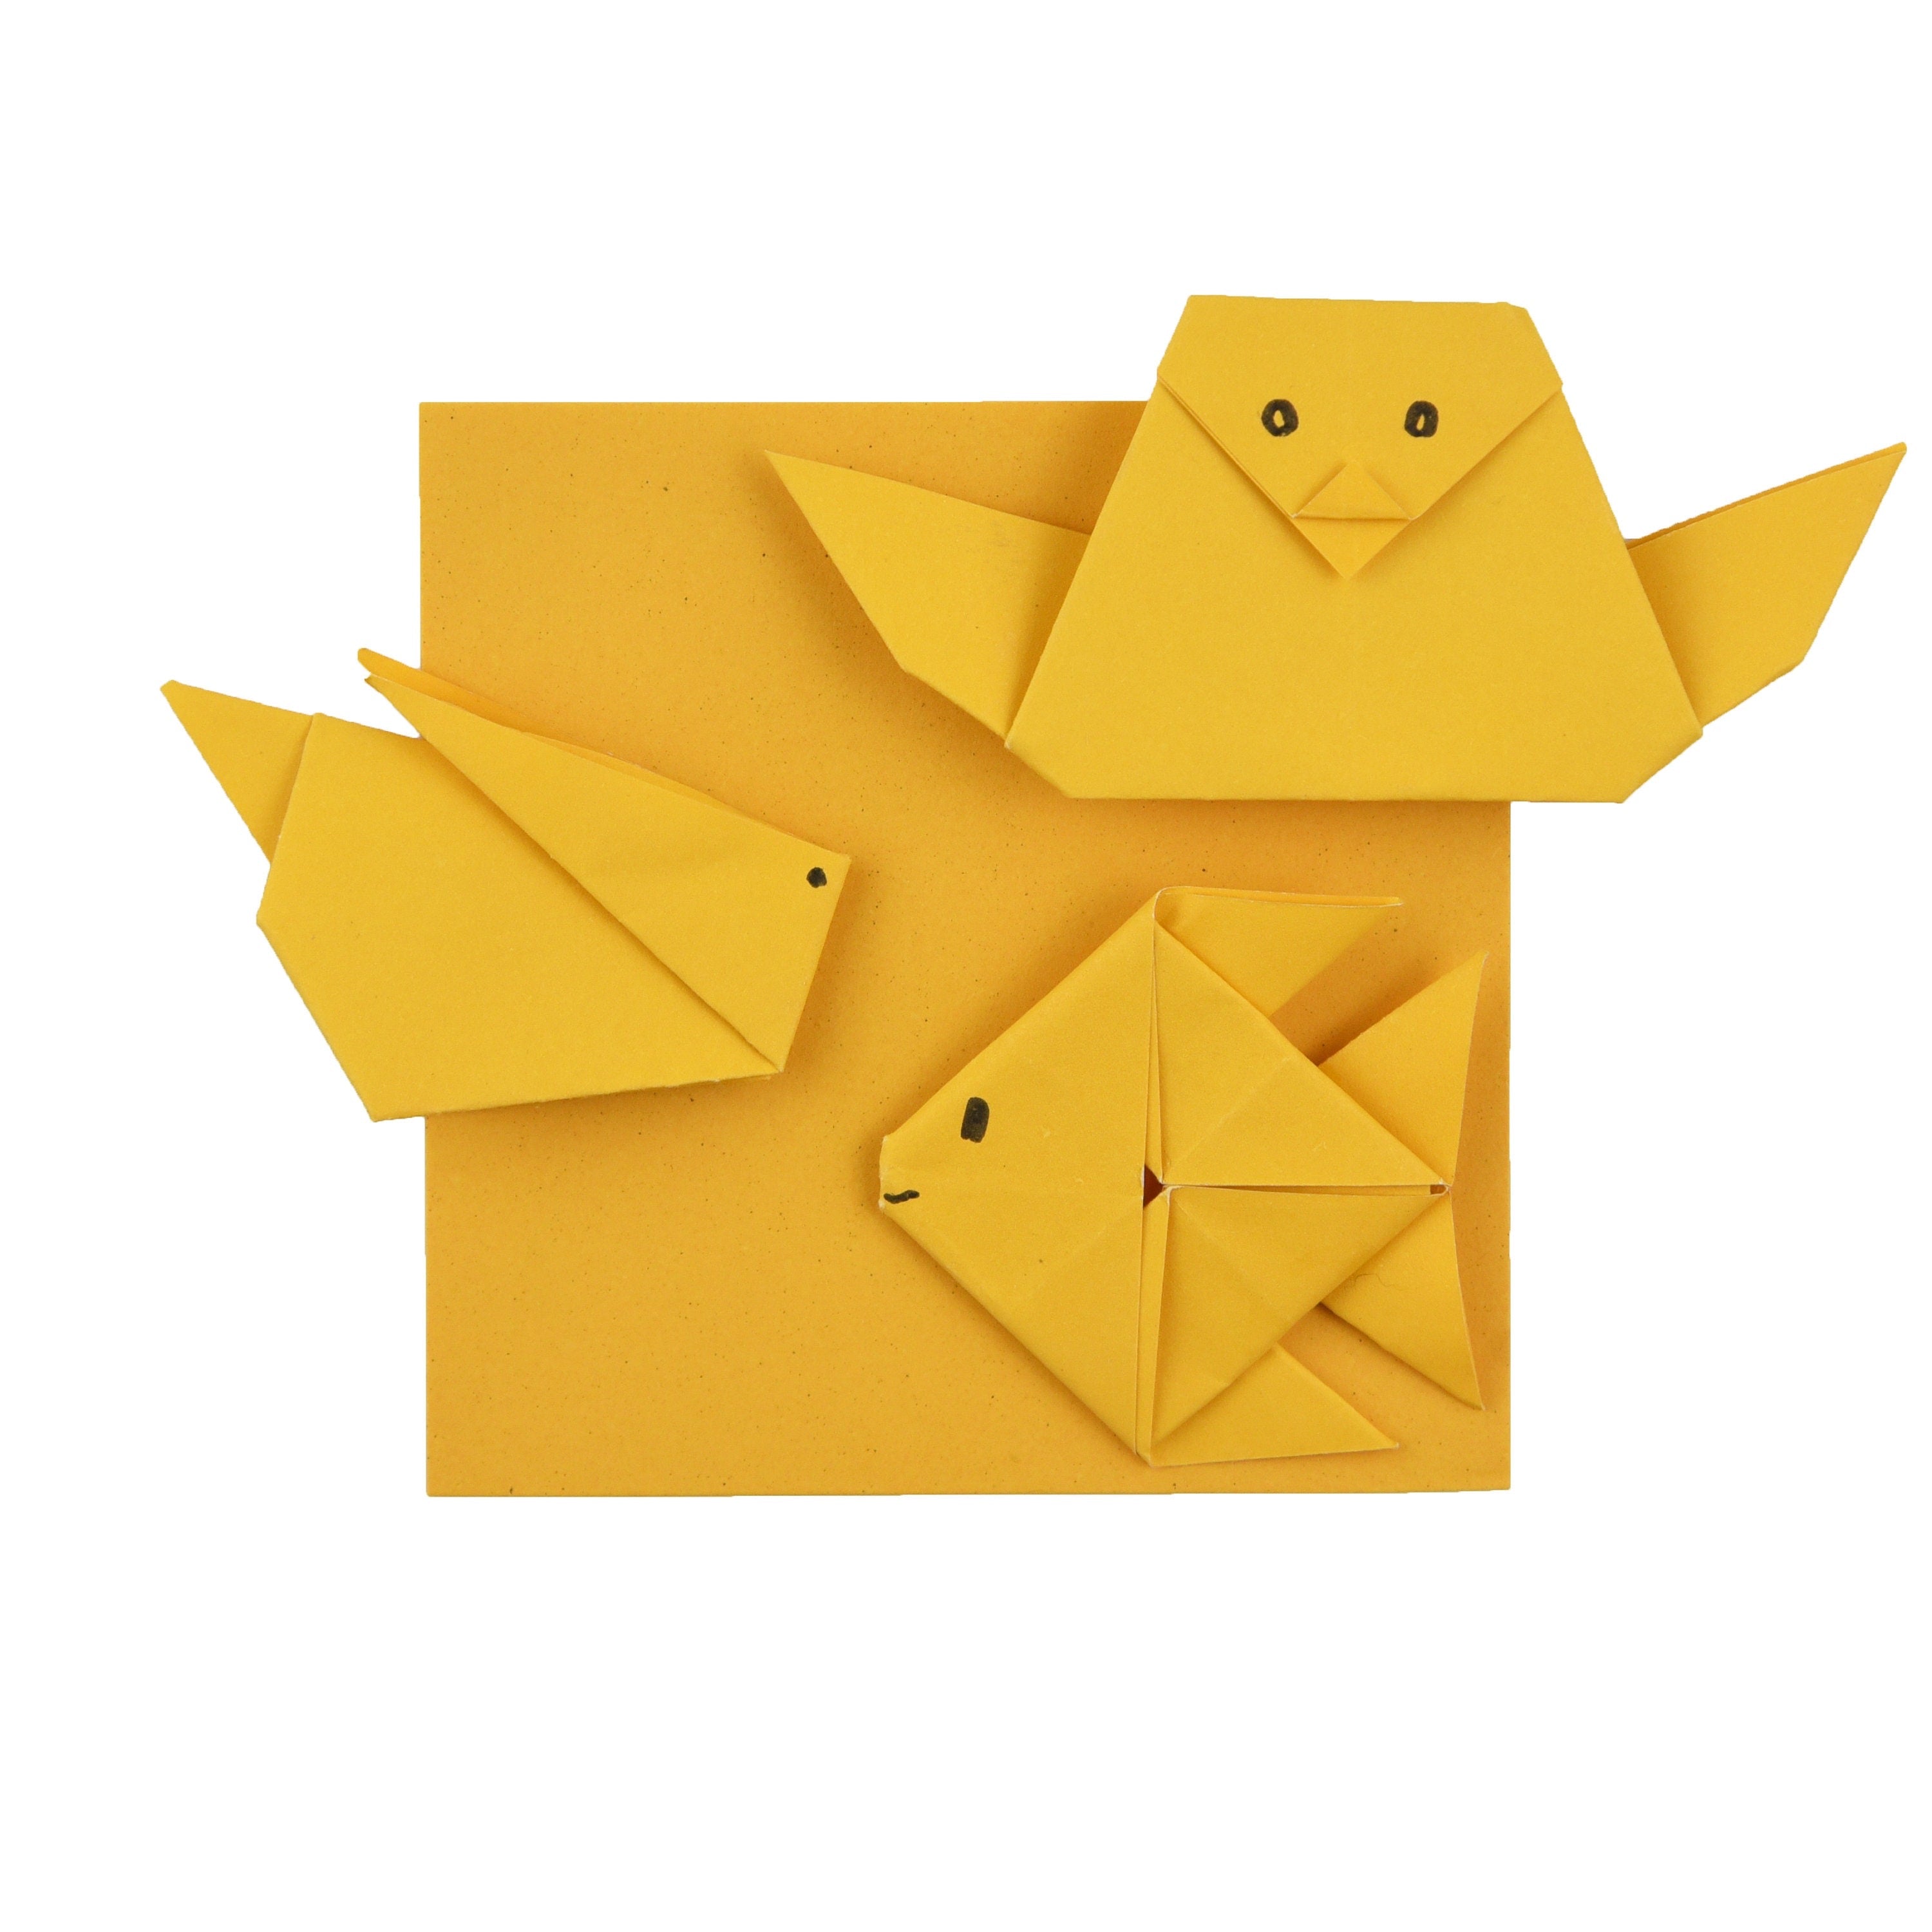 100 Hojas de Papel Origami - 6x6 pulgadas - Paquete de Papel Cuadrado para Plegar, Grullas de Origami y Decoración - S26